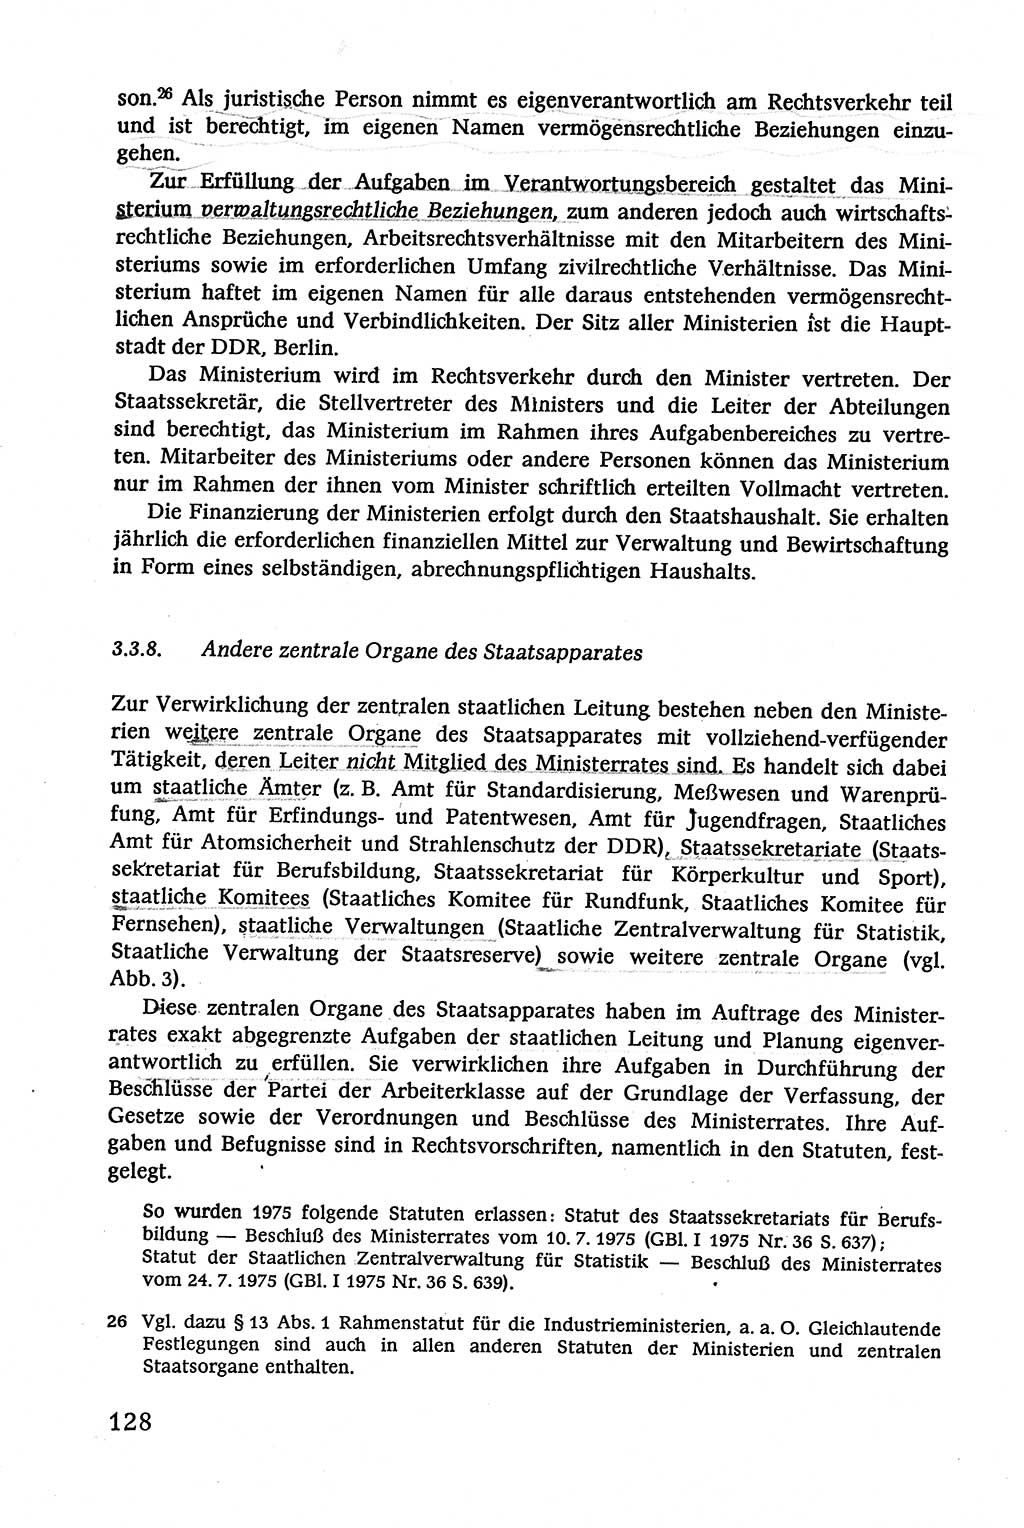 Verwaltungsrecht [Deutsche Demokratische Republik (DDR)], Lehrbuch 1979, Seite 128 (Verw.-R. DDR Lb. 1979, S. 128)